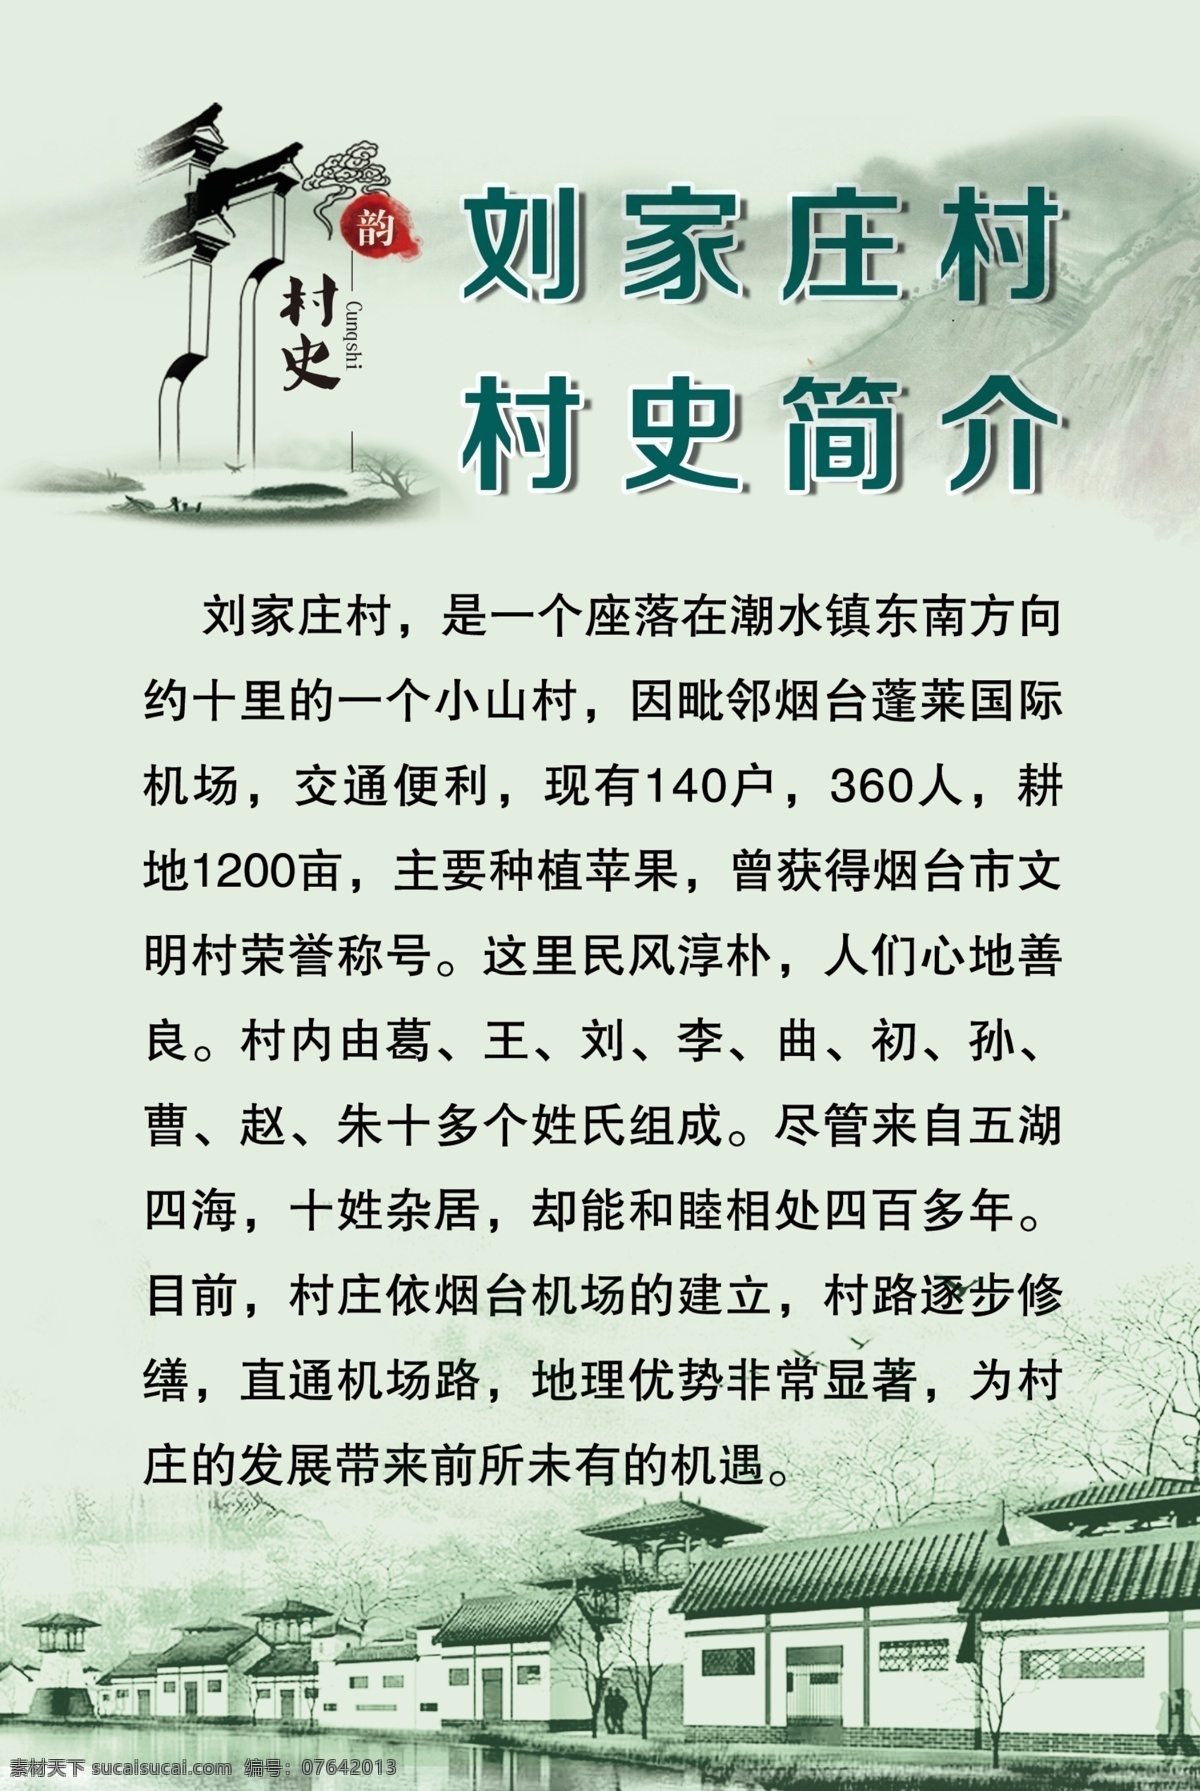 刘家庄村史 村史文化 村史 古典 中国风 艺术文化 戏曲文化 乡村文化 文化宣传栏